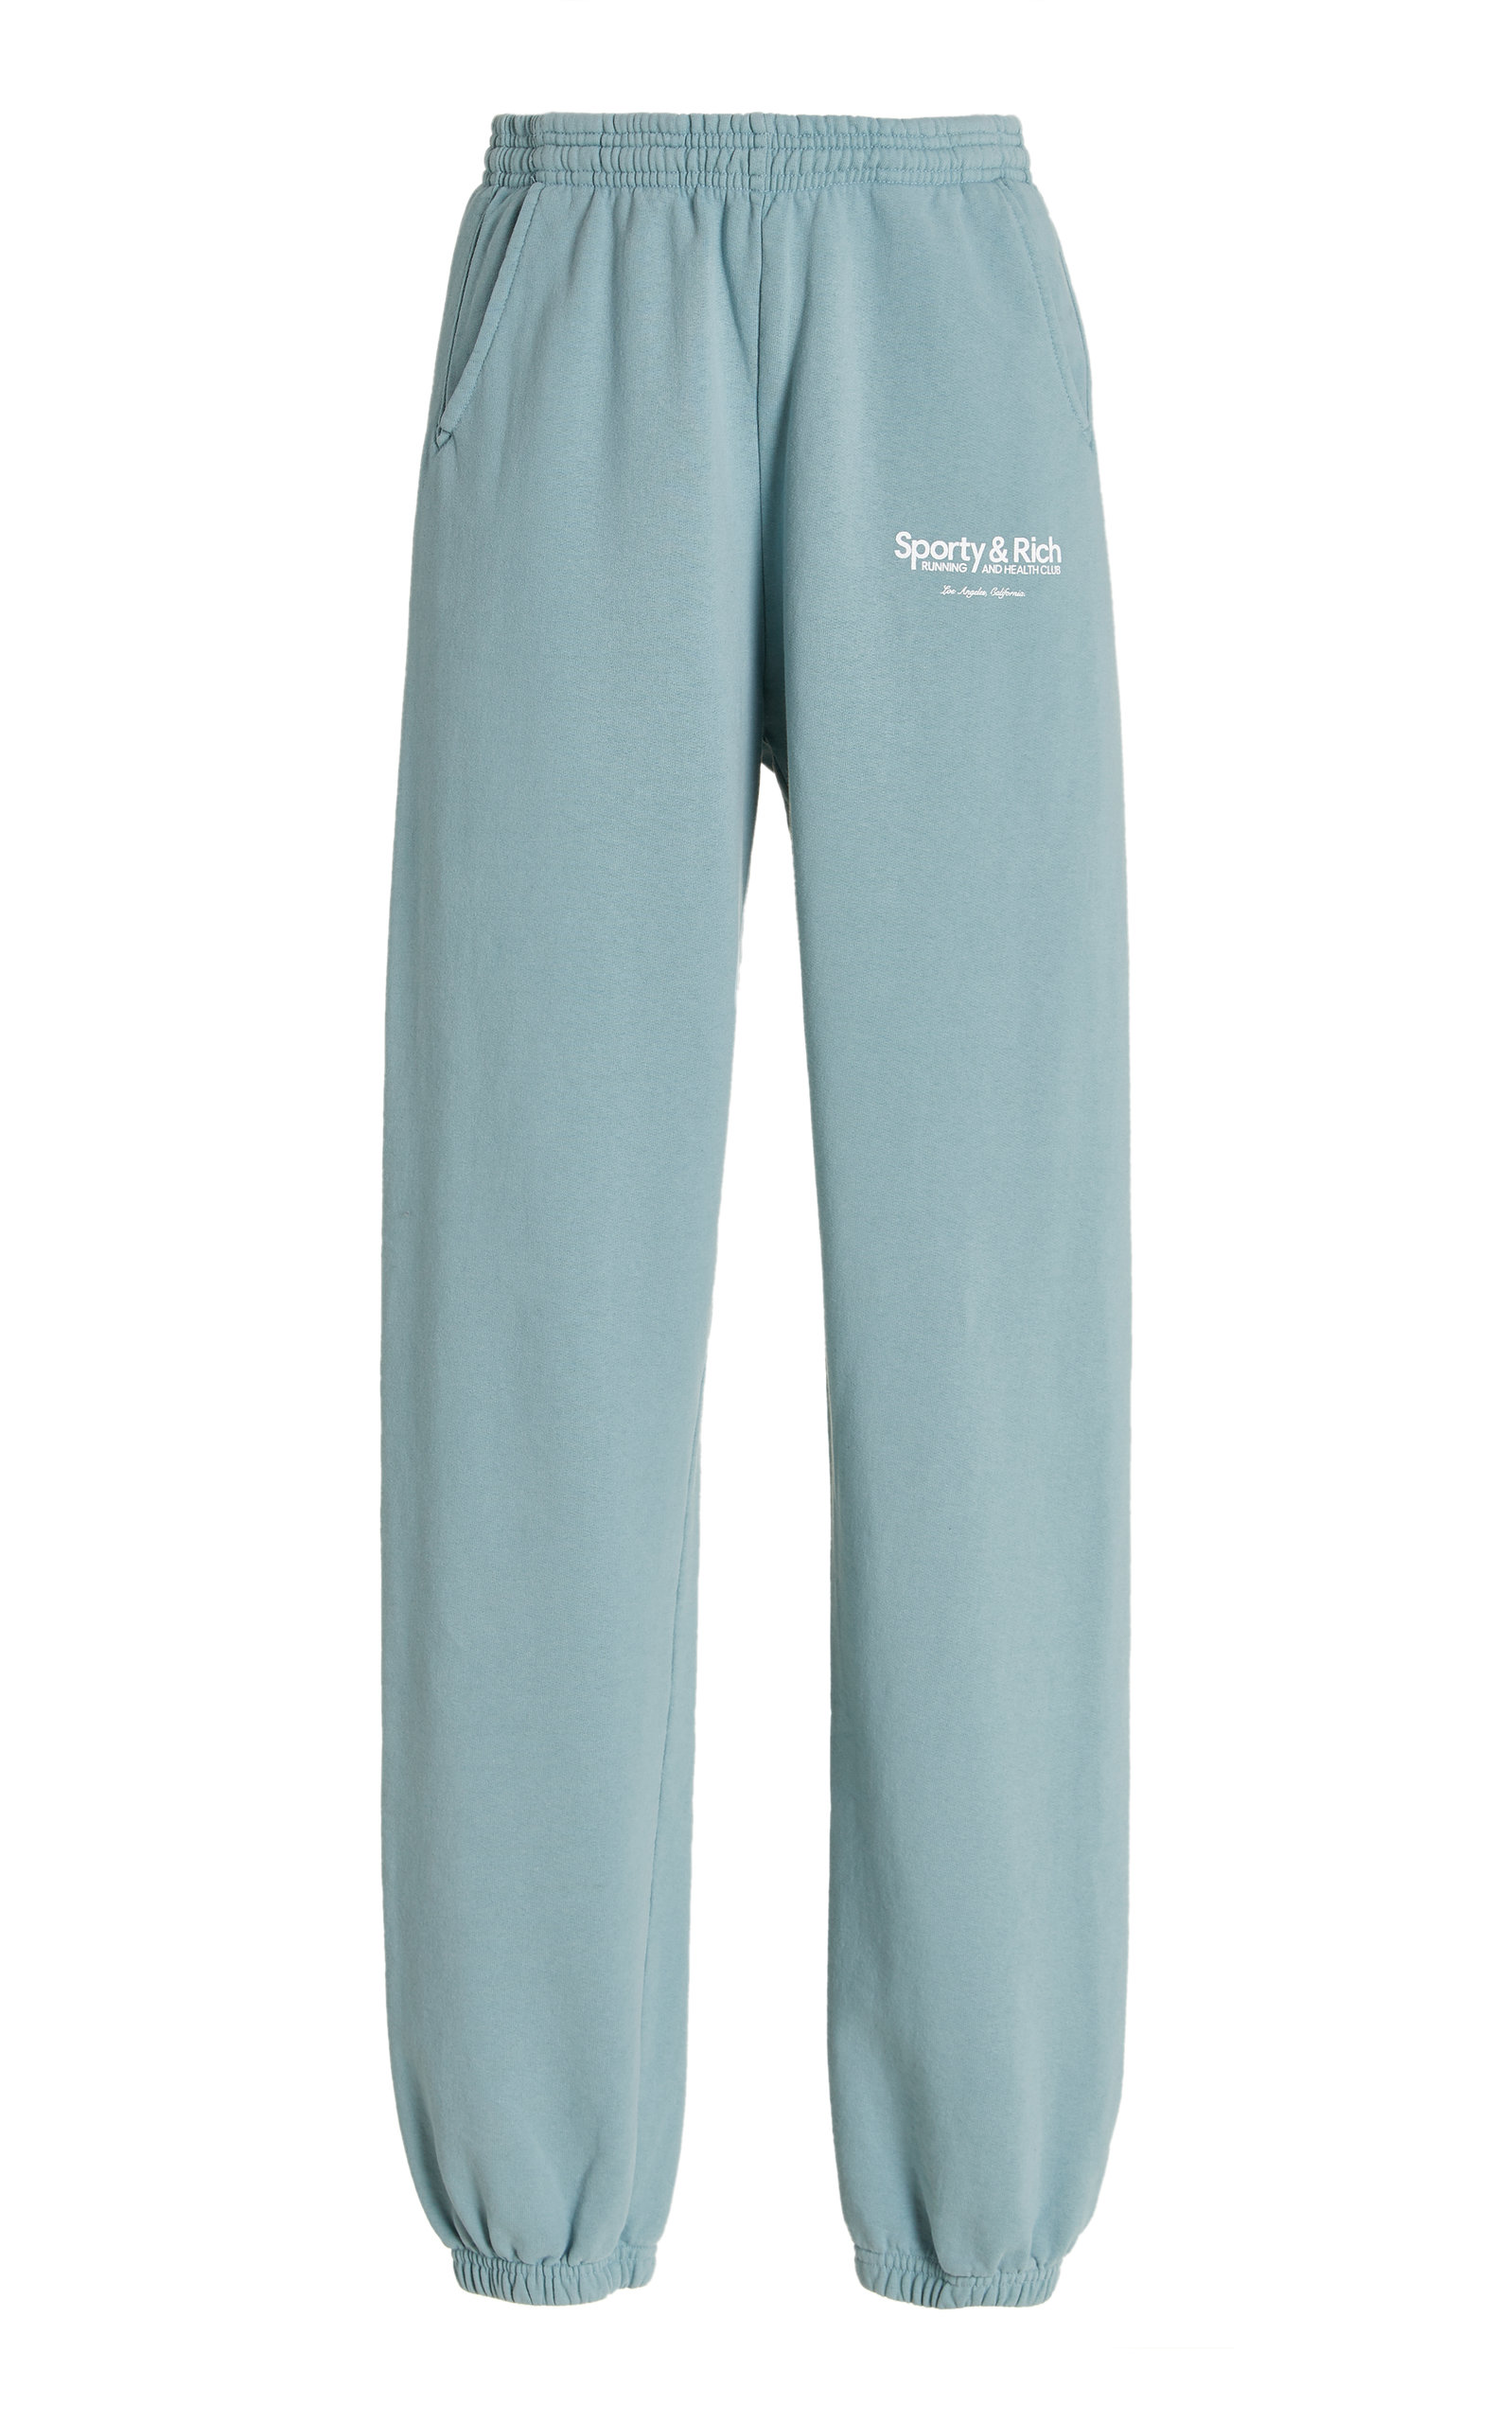 Sporty & Rich - Women's Club Cotton Sweatpants - Blue - Moda Operandi